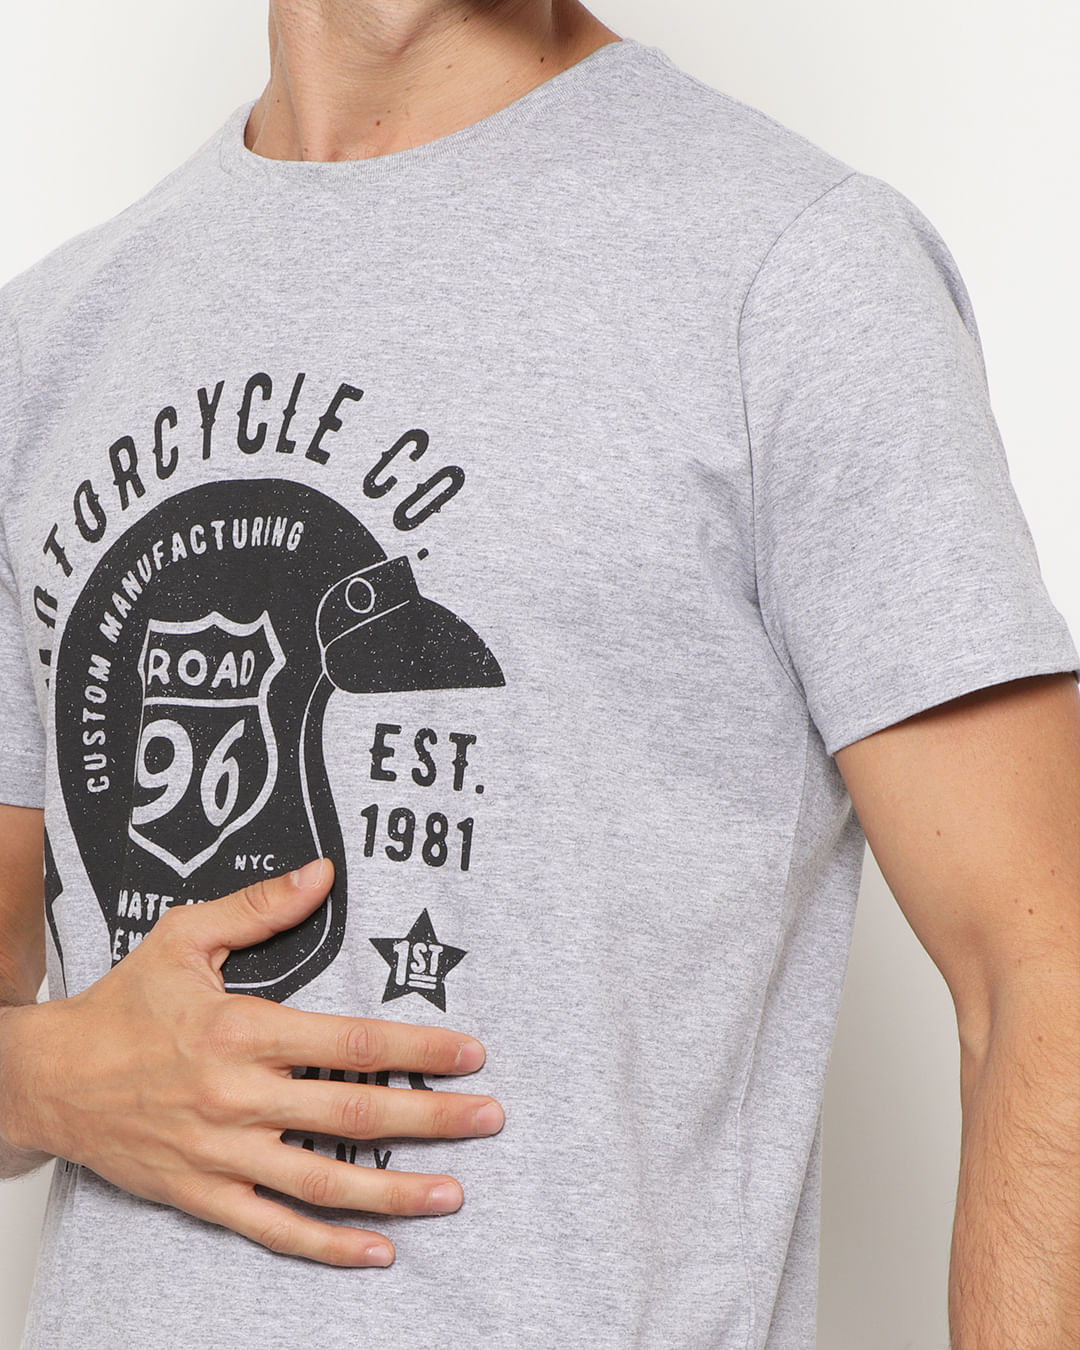 T-Shirt Factory e a experiência em preto e branco - Consumidor Moderno